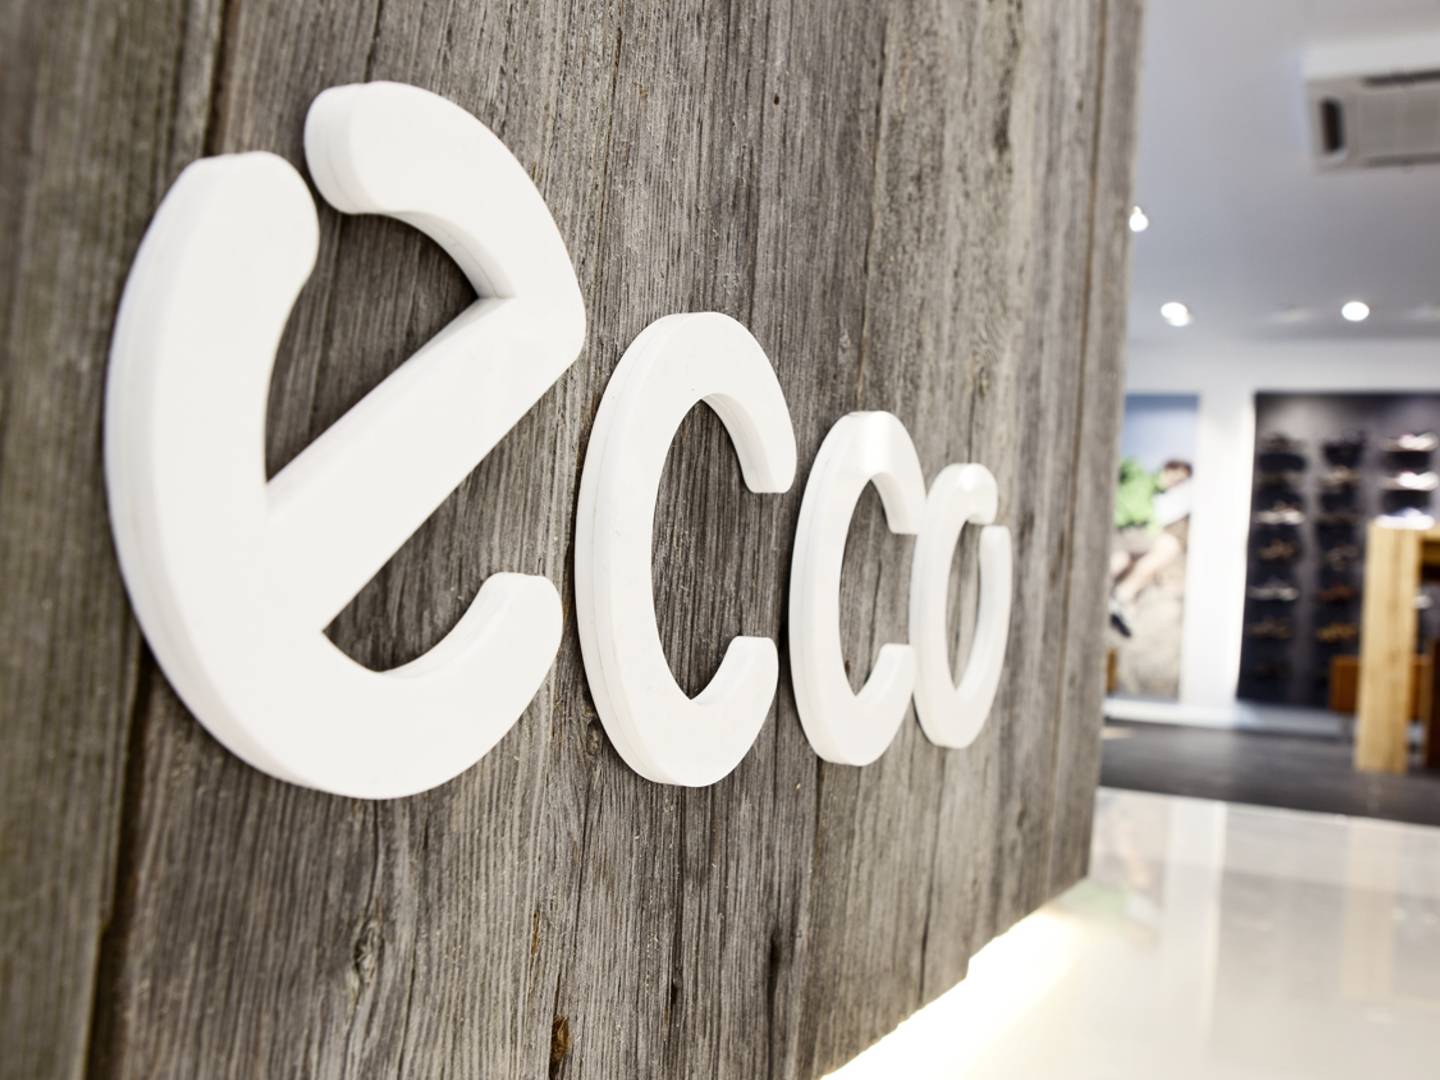 Ecco-butik København udsat for hærværk